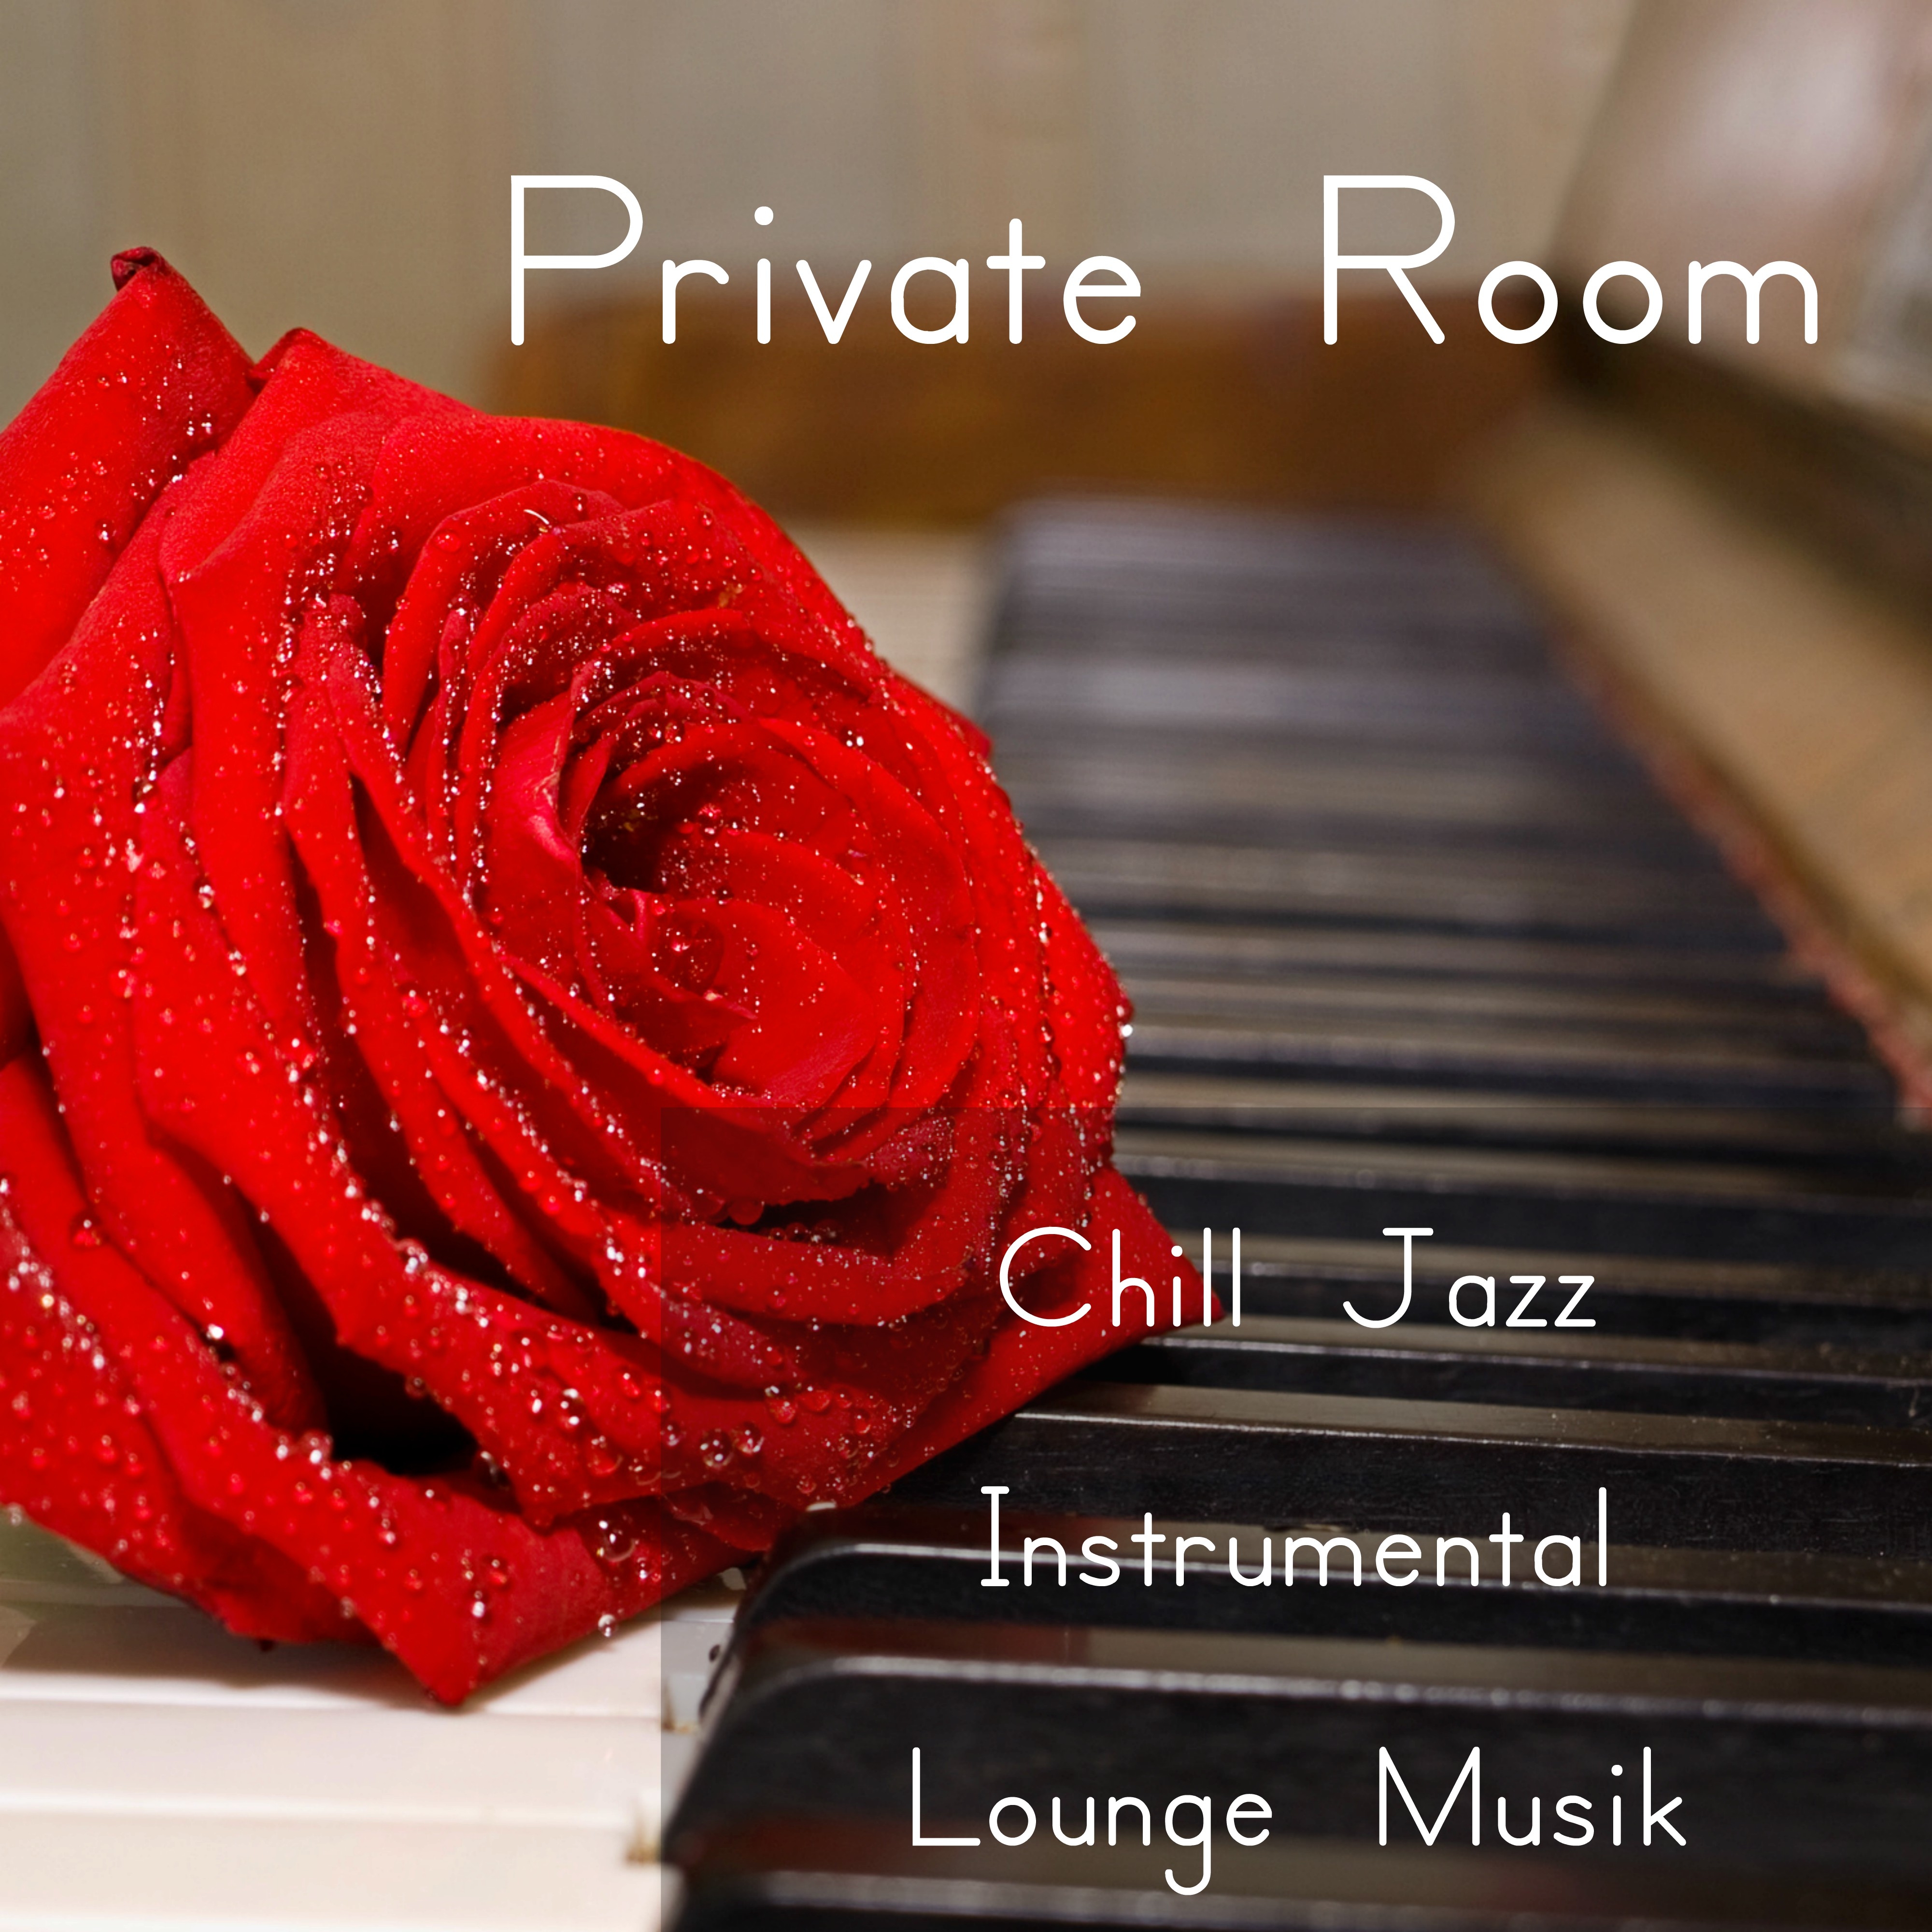 Private Room   Chill Jazz Instrumental  Lounge Musik f r Djup Avslappning och Romantisk Natt